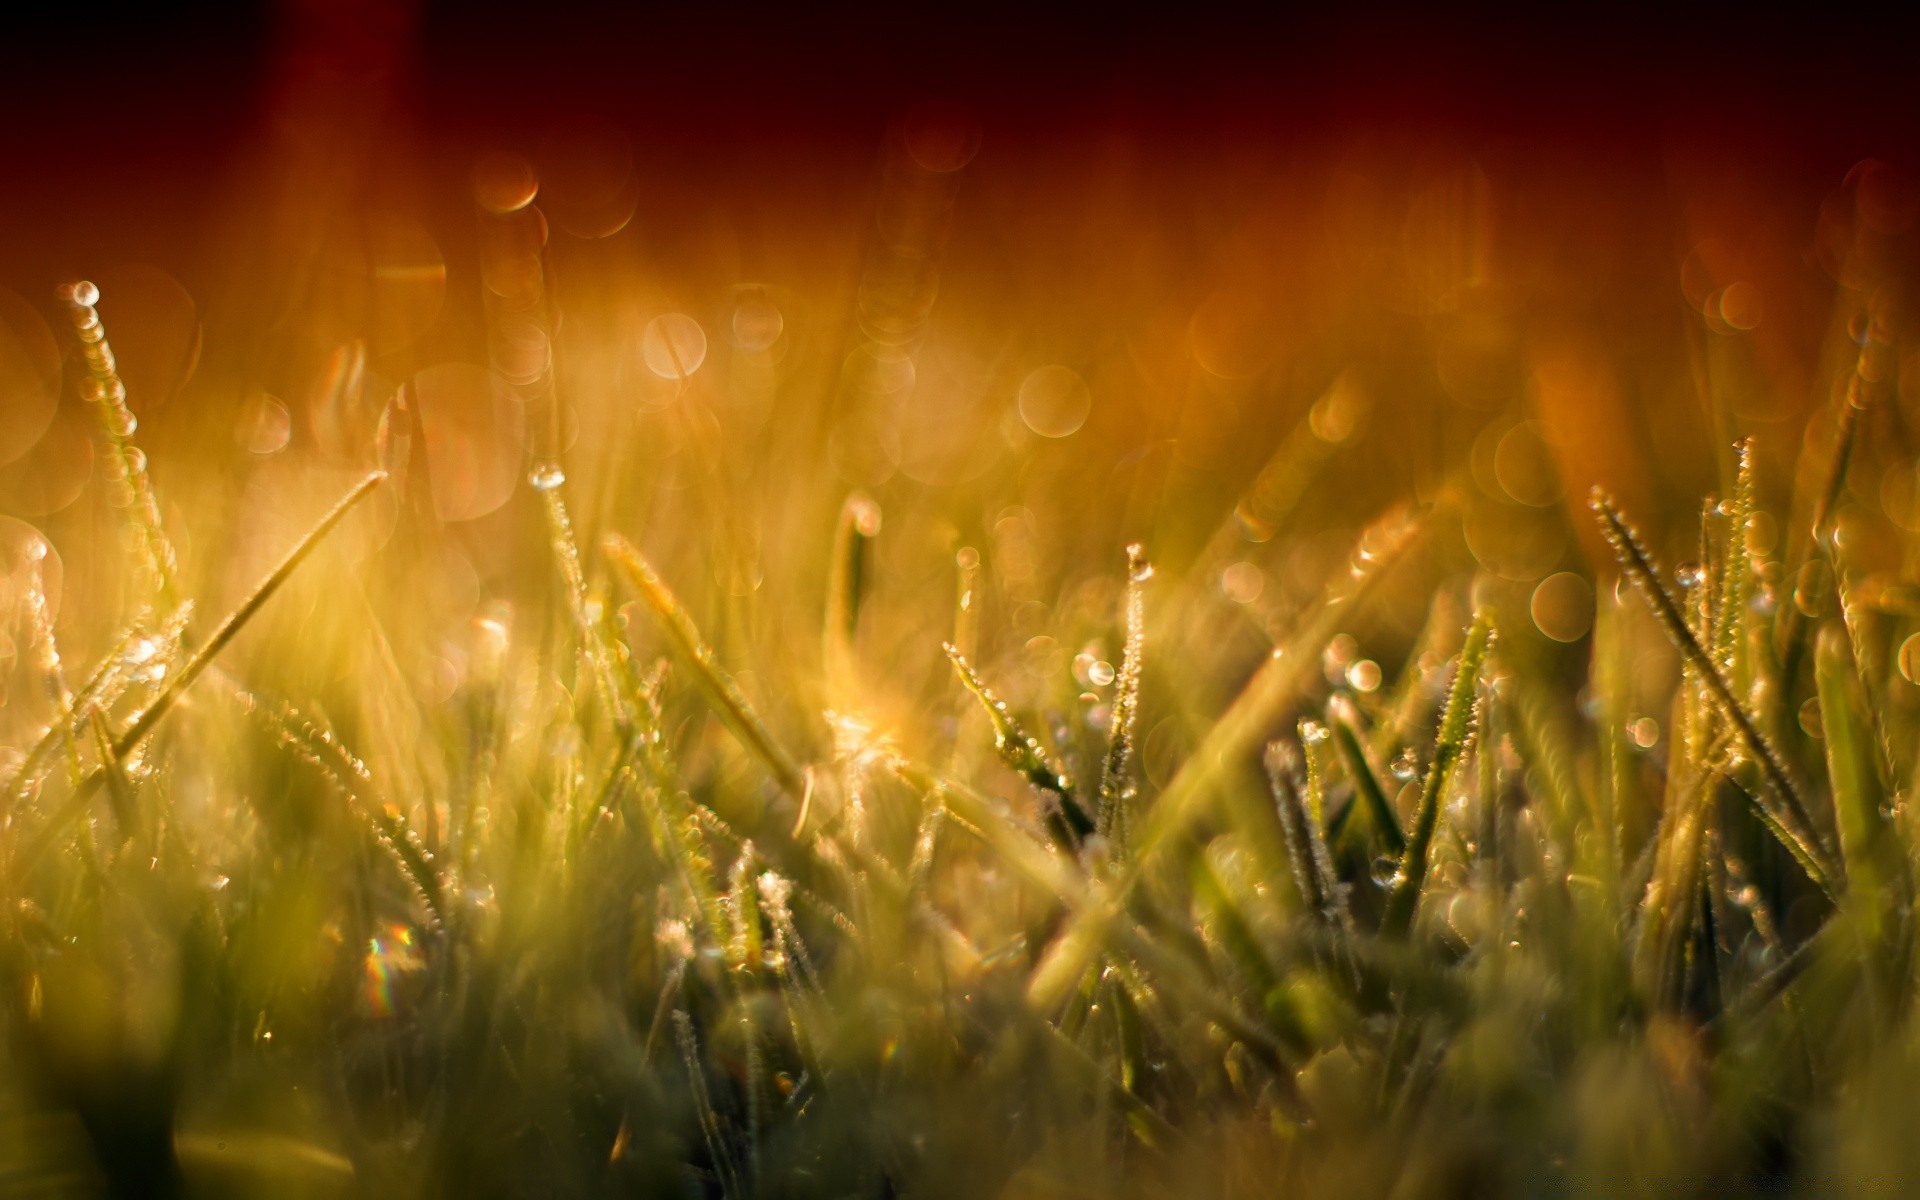 bokeh grass field sun gold hayfield bright dawn nature rural sunset summer blur fair weather lawn season light